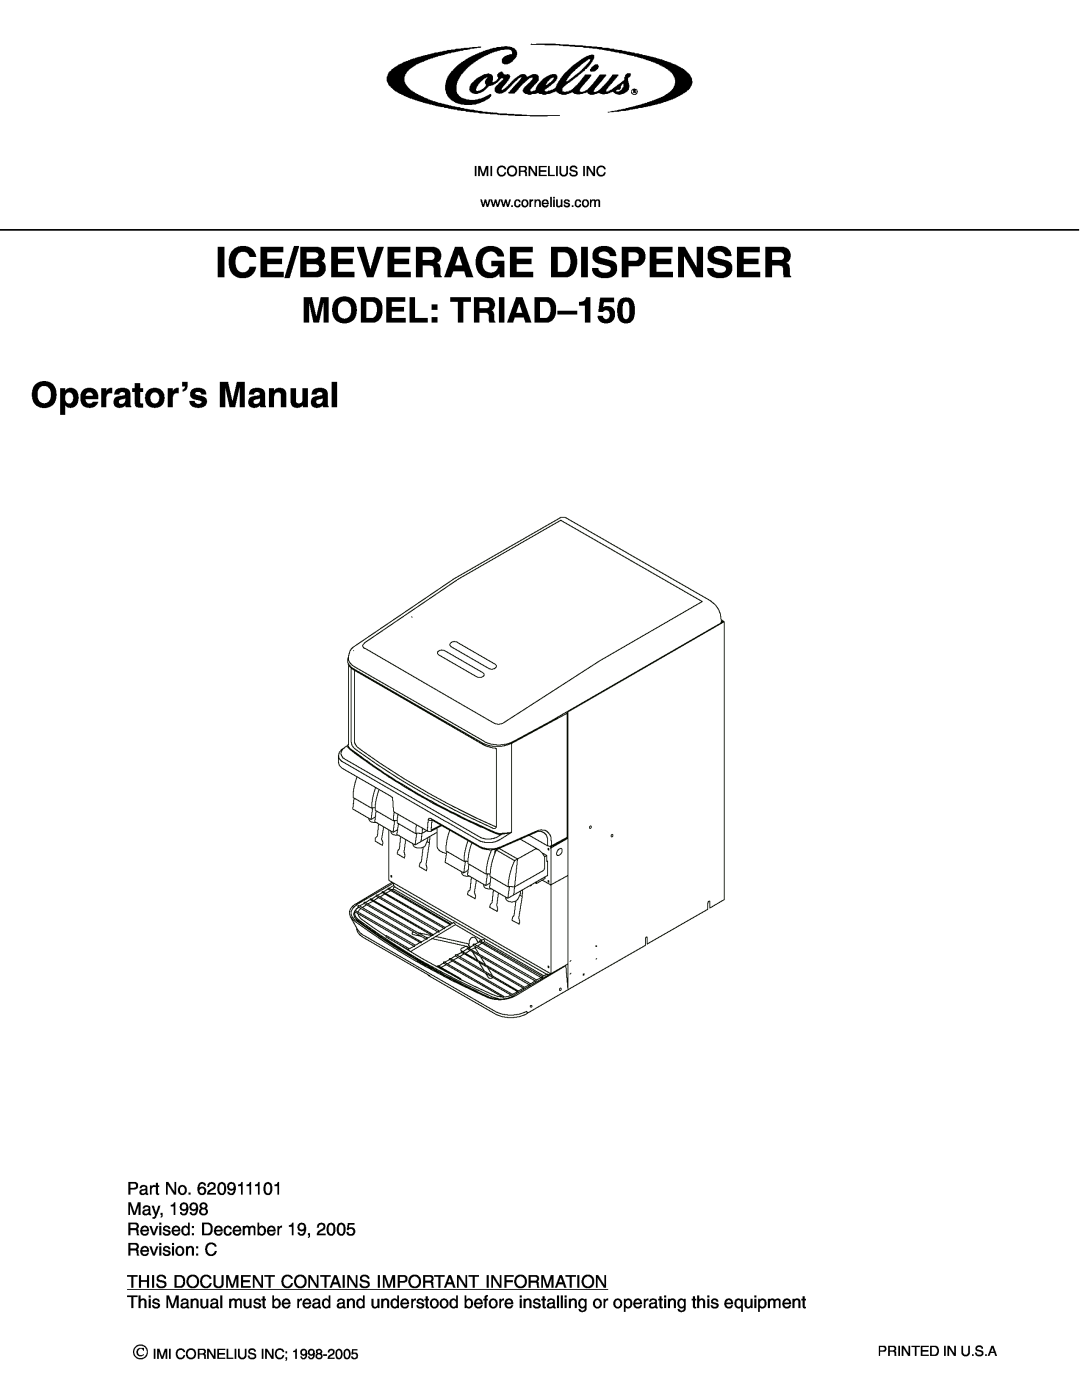 Cornelius manual Ice/Beverage Dispenser, MODEL TRIAD-150 Operator’s Manual 